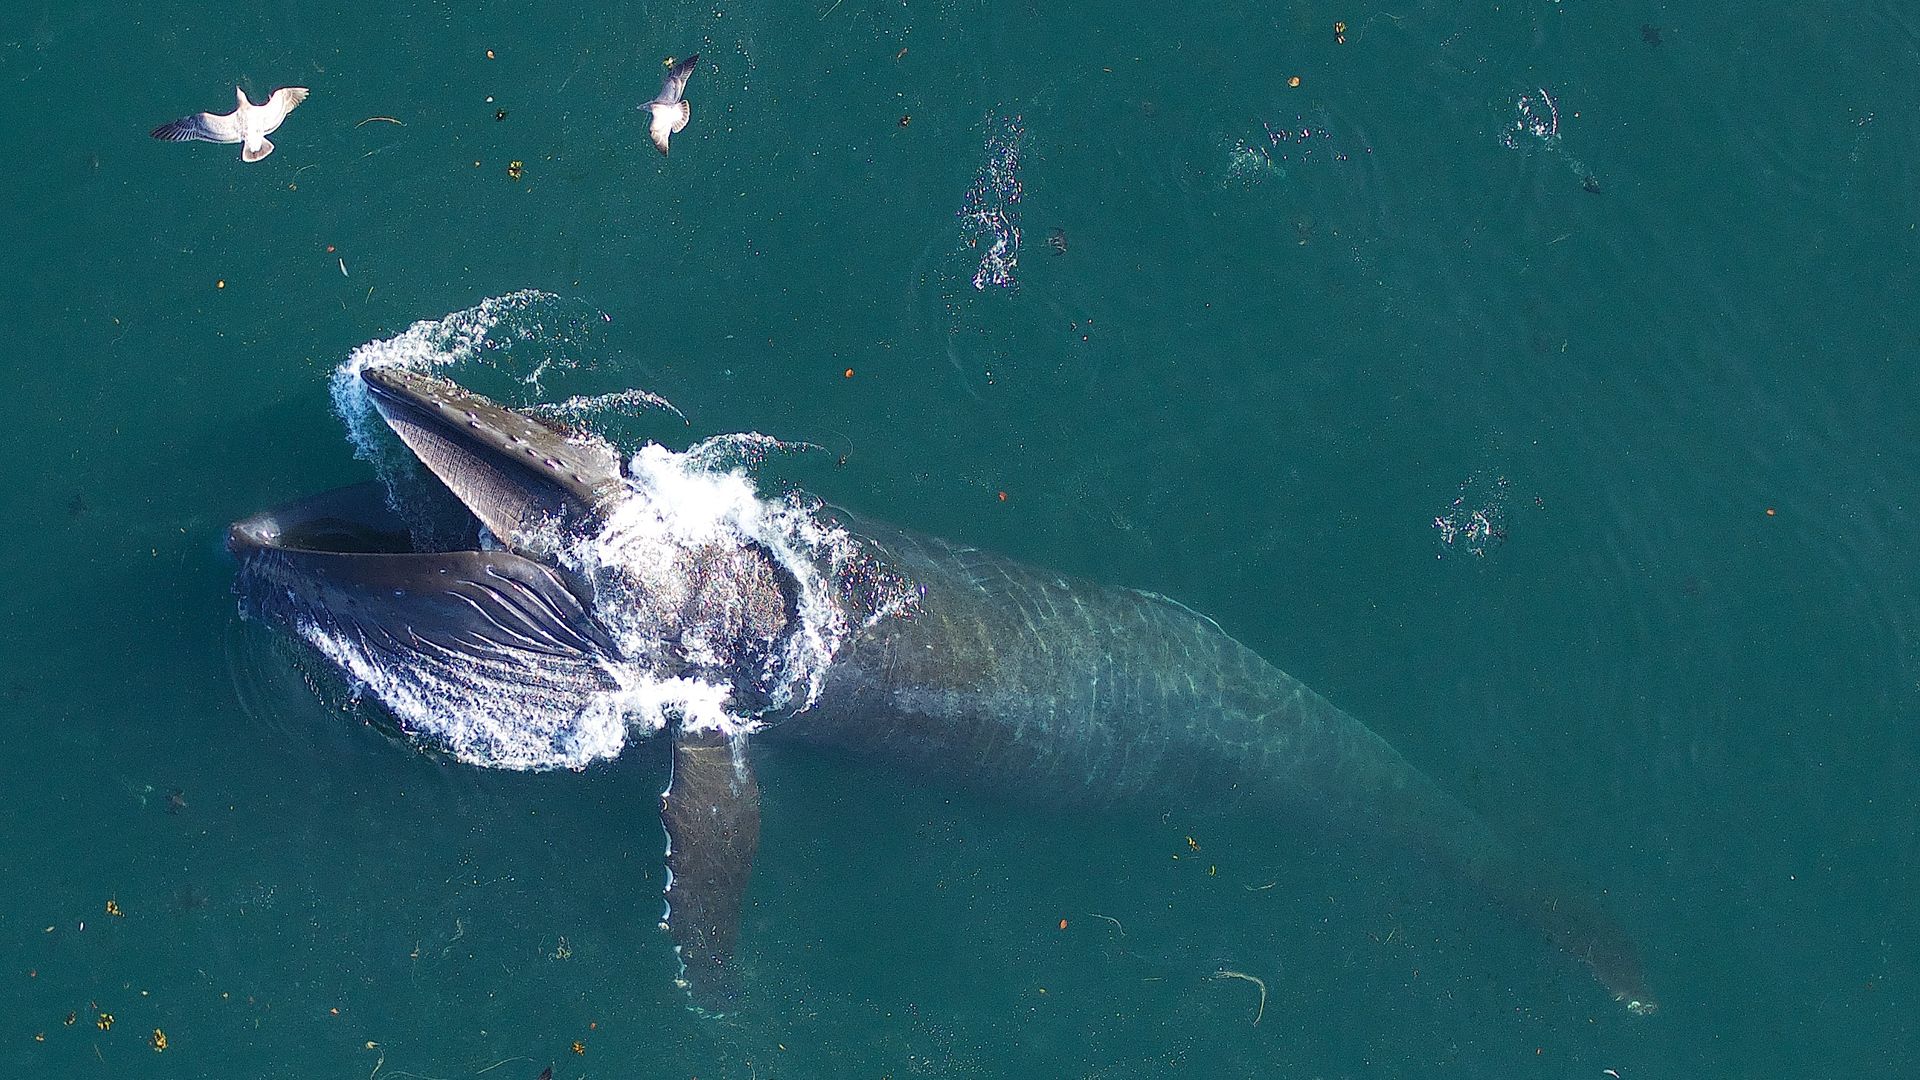 A humpback whale feeds off coast of California.